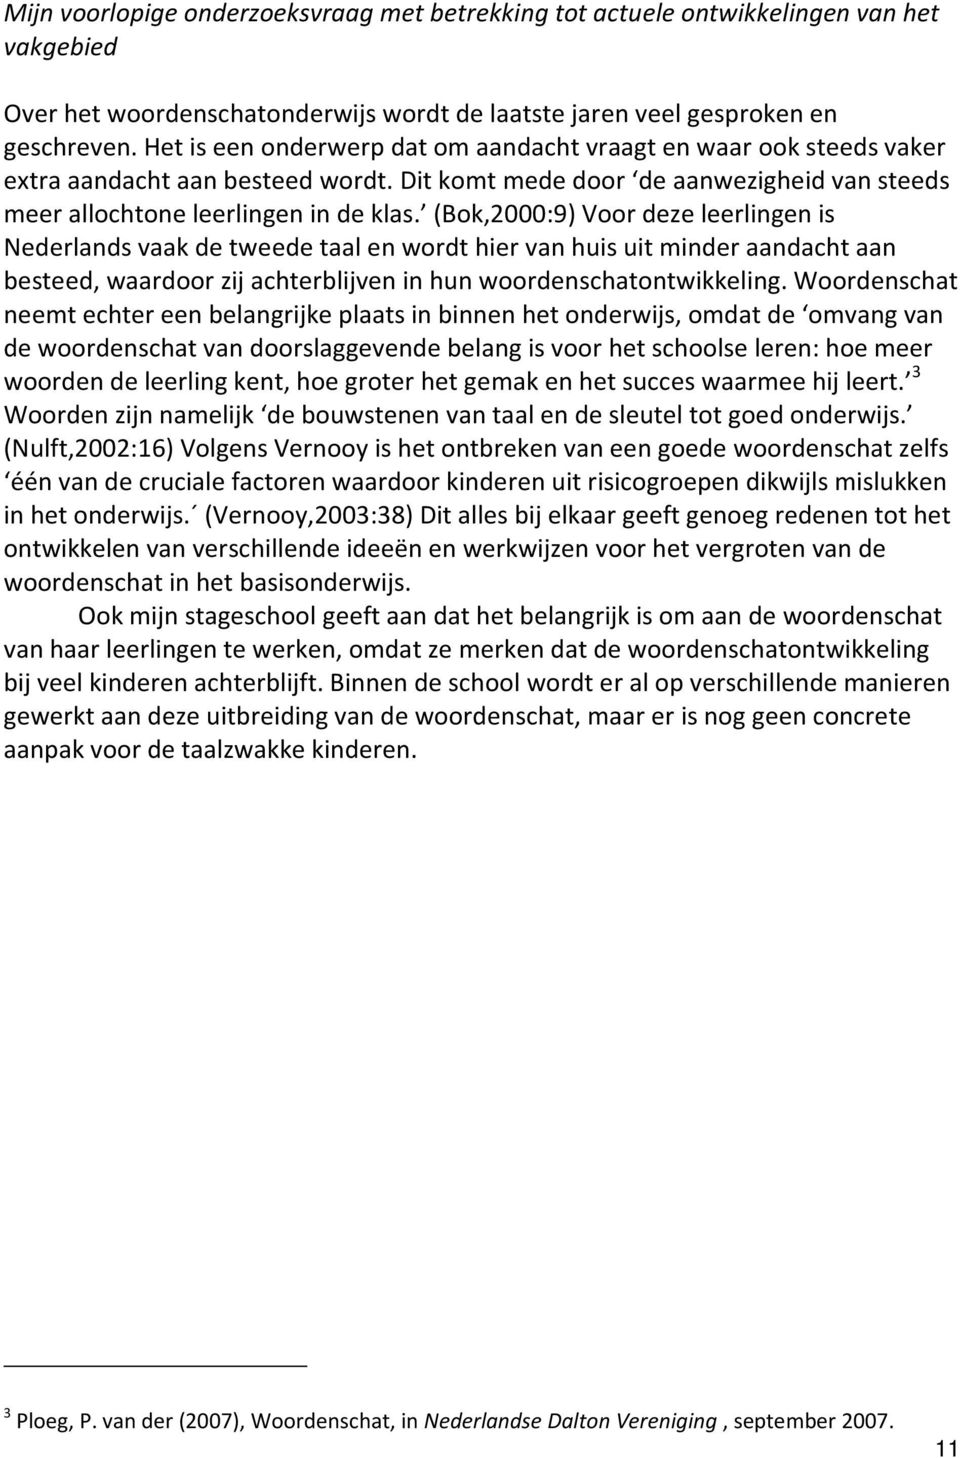 (Bok,2000:9) Voor deze leerlingen is Nederlands vaak de tweede taal en wordt hier van huis uit minder aandacht aan besteed, waardoor zij achterblijven in hun woordenschatontwikkeling.